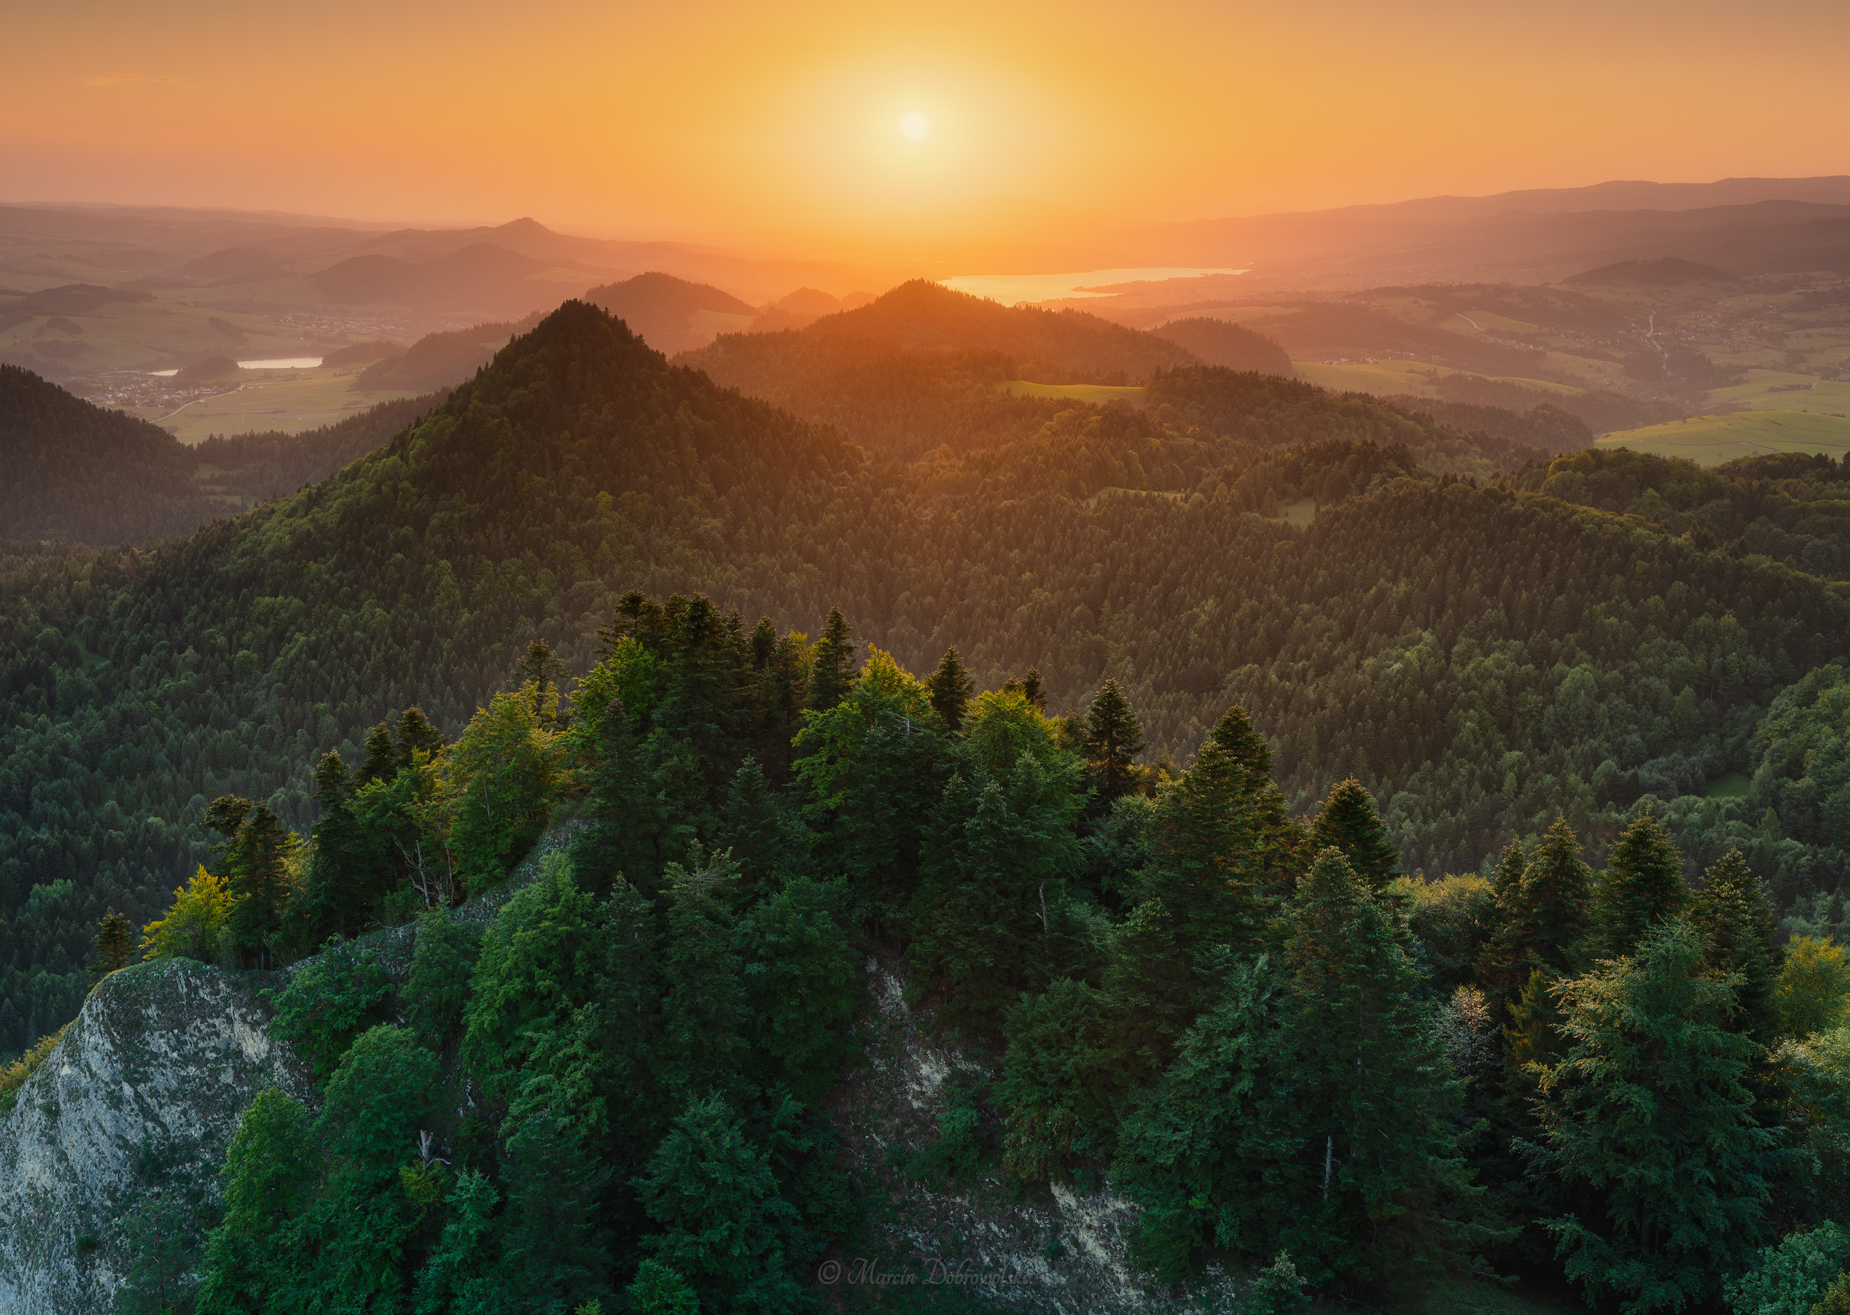 landscape, mountainscape, ThreeCrowns, Poland, Polska, Pieniny, sun, sunset, trees, forest, mountains, Nikon, Tamron,  Marcin Dobrowolski